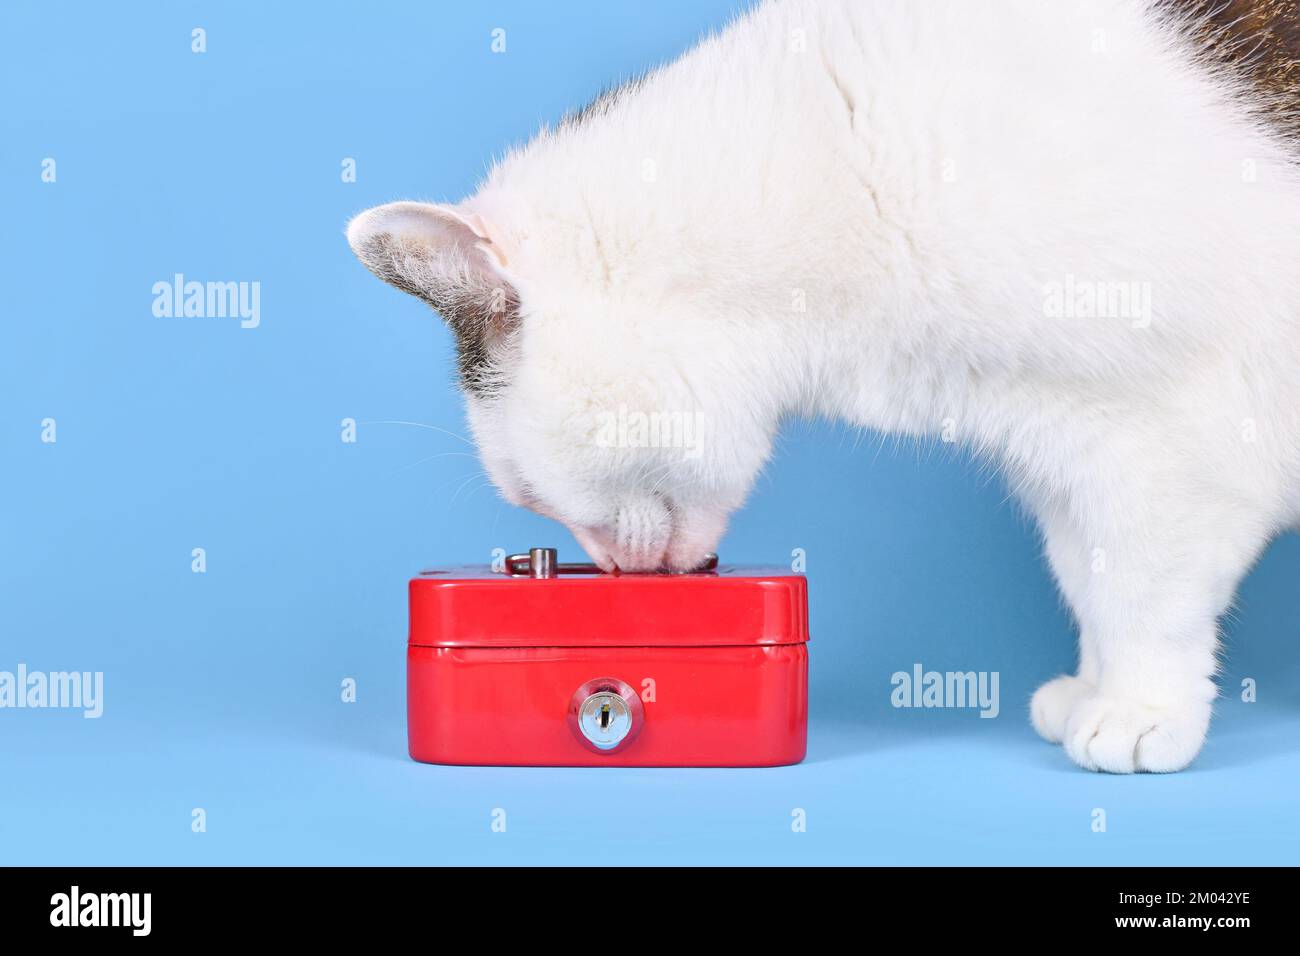 White pet cat examining locked red cash box Stock Photo